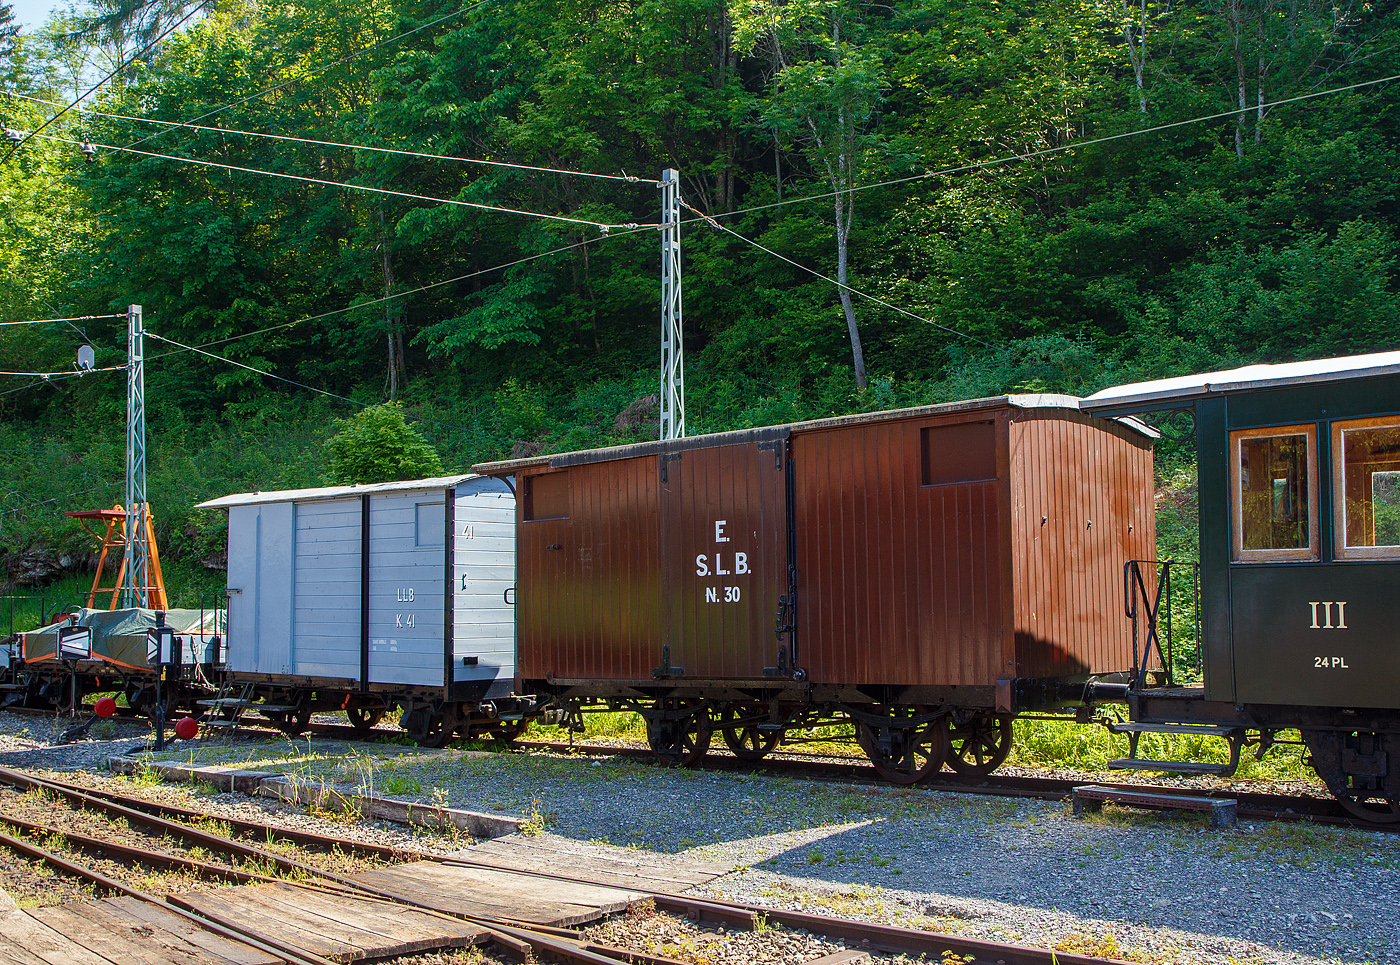 Der zweiachsige gedeckte Güterwagen K 30, ex S.L.B. E 30 (Schweizerische Lokalbahnen ab 1885 Appenzellerbahn-Gesellschaft, kurz Appenzeller Bahn), am 27.05.2023 im Museumsareal Chaulin der Museumsbahn Blonay-Chamby. 

Der Wagen wurde 1874 von der deutschen Maschinenfabrik Kirchheim an der Teck für Schweizerische Lokalbahnen S.L.B. gebaut. Er ist heute einer der ältesten in Europa.

Die 1872 gegründete Schweizerische Gesellschaft für Lokalbahnen war die Wiege der Appenzeller Bahn. Die SLB wollte viele Nebenstrecken in der Schweiz bauen, es zu viele Projekte. Sie baute die 1875 eröffnete Eisenbahnlinie zwischen Herisau und Winkeln im Kanton Appenzell (bis September 1875 bis Urnäsch verlängert), die nach der Lausanne-Echallens die zweite Schmalspurbahn in der Schweiz war. Durch die dauernde Finanzknappheit wurde die SLB 1875 umgewandelt und in Appenzeller Bahn-Gesellschaft, kurz Appenzeller Bahn, umbenannt. Die Appenzeller Bahn konnte im August 1886 die Weiterführung der Strecke zwischen Urnäsch und Appenzell in Betrieb nehmen, womit die konzessionierte Strecke vollendet war.

Lebenslauf des K 30 (E 30):
1874 Lieferung und Inbetriebnahme für Arbeits- und Güterzügen
1875 Offizielle Inbetriebnahme als S.L.B. E 30
1885 Aufgrund von miserablen Zustands war bereit der Abbruch geplant, die Tragfähigkeit wurde aber erstmal reduziert. 
1887 Überholungsarbeiten, Verstärkung des Rahmens, Erneuerung des Dachs und der Wagenkasten wurden restauriert. 
1898 Installation einer weißen Westinghouse-Bremsleitung
1900 Rekonstruktion des Fahrgestells und vollständige Überholung des Wagenkastens, Verstärkung durch Stahlplatten.
1923 Abstellung (aus aktivem Konto entfernt). 
1941 Reaktivierung des Wagens al AB K 47
1948 als AB K 147 neu nummerieren
1953 Überholung, Anstrich in grau
1963 Stilllegung, Reserve Herisau
1968 Der Wagen wird durch Beschluss der Generalversammlung der AB an Chemin de Fer Blonay-Chamby übertragen, die dann 1972 erfolgt.
Ob da wirklich noch was an dem Wagen aus dem Jahr 1874 stammt, kann ich bei dem Lebenslauf nicht sagen.

TECHNISCHE DATEN:
Baujahr: 1874
Hersteller: Maschinenfabrik Kirchheim an der Teck
Spurweite: 1.000 mm (Meterspur)
Achsanzahl: 2
Länge über Puffer: 6.600 mm
Achsabstand: 2.300 mm
Eigengewicht: 4,3 t
Nutzlast: 6 t

Dahinter steht der zweiachsige gedeckte Güterwagen ex LLB K 41.
